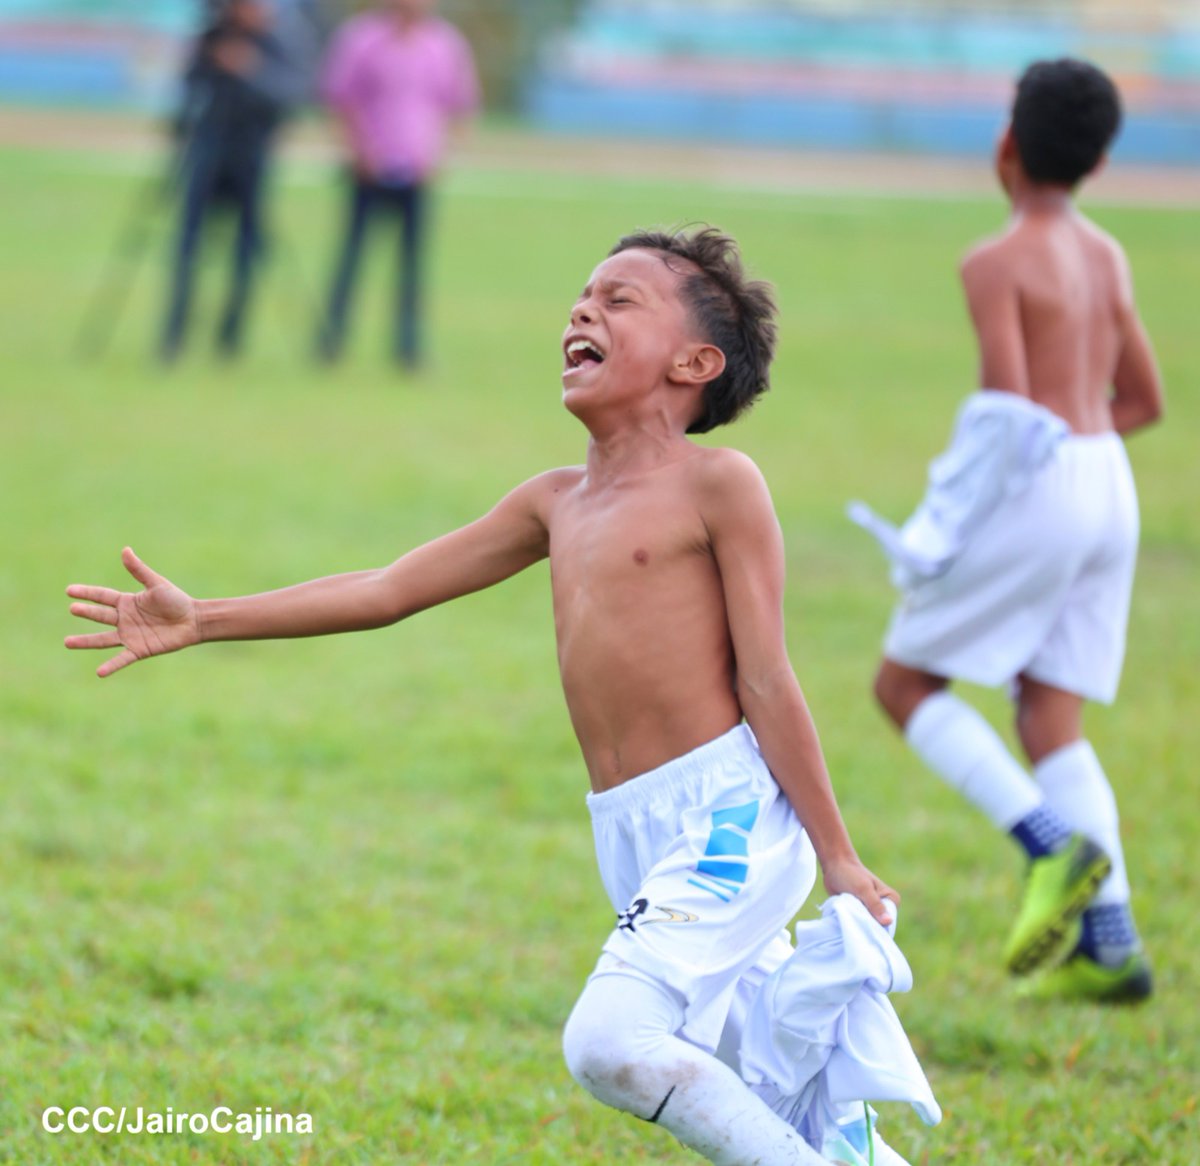 Los niños del equipo Río Blanco de Matagalpa, son los nuevos campeones de los Juegos Escolares Nacionales en la categoría de fútbol 7 masculino, tras 5 días de competencia, impulsado por nuestro gobierno a nivel nacional.

CCC(JairoCajina)